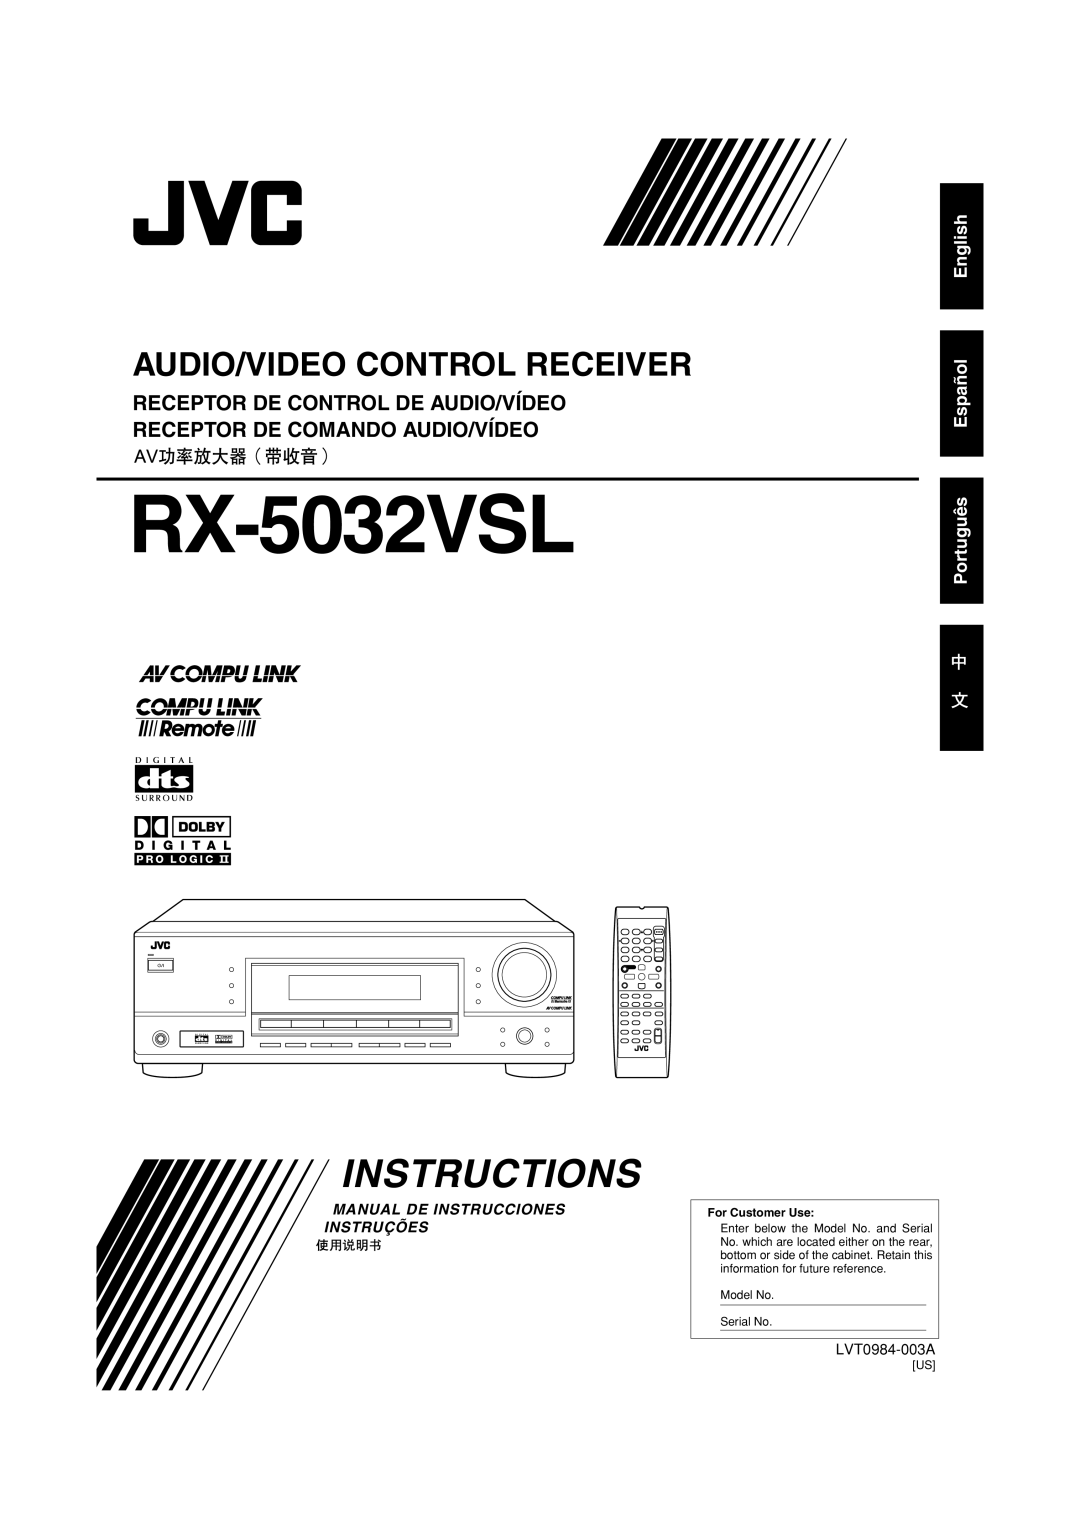 JVC RX-5032VSL manual Instructions, Audio/Video Control Receiver, English Español Português, LVT0984-003A, D I G I T A L 